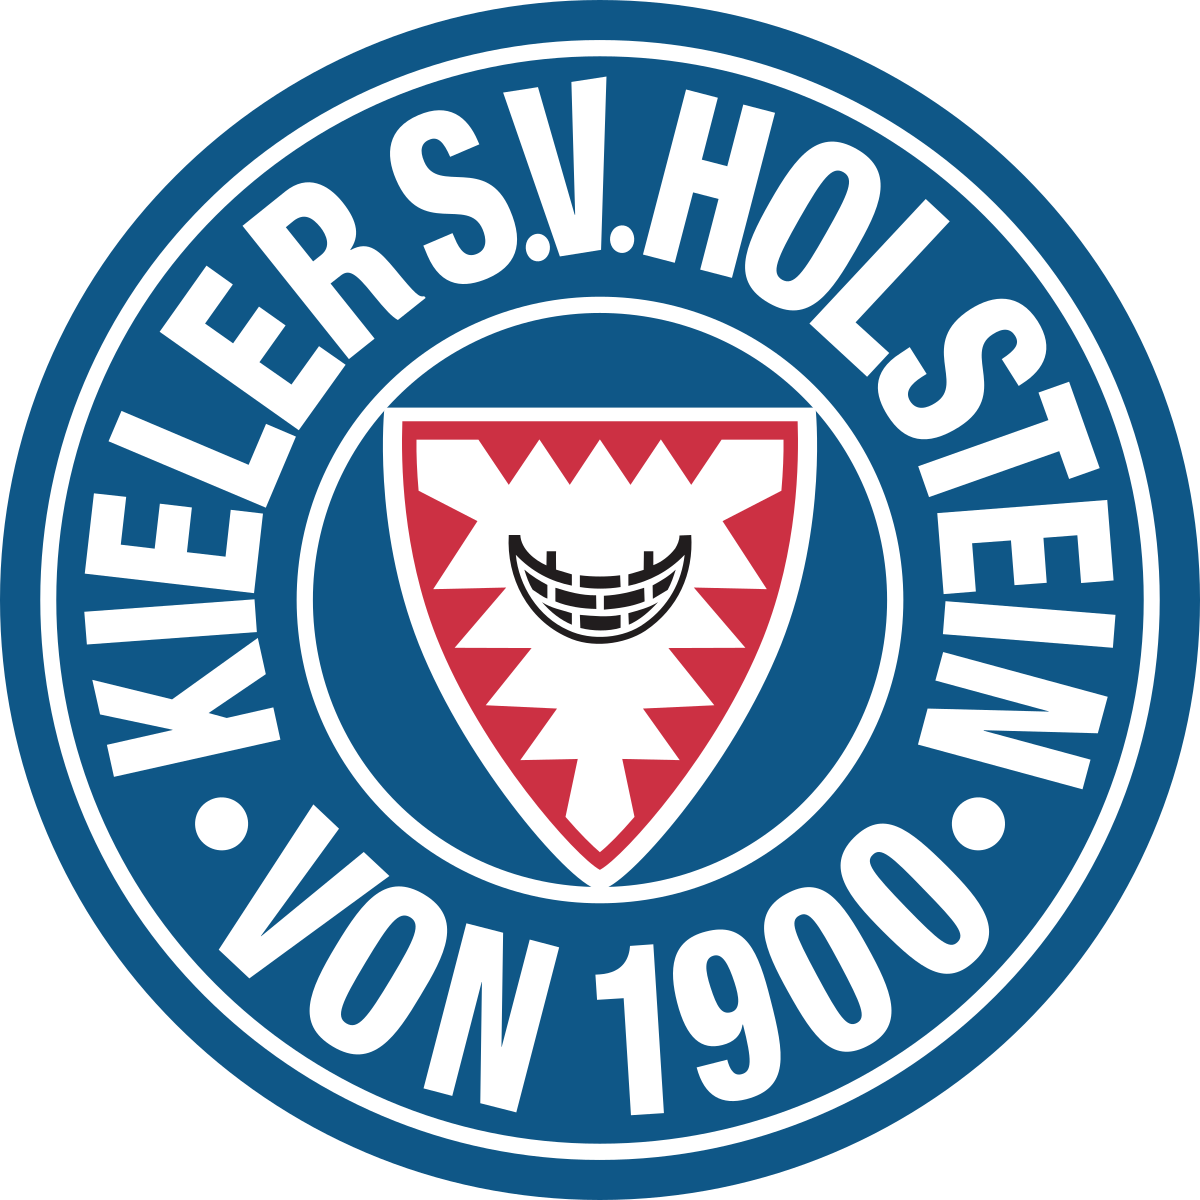 荷尔斯泰因 logo